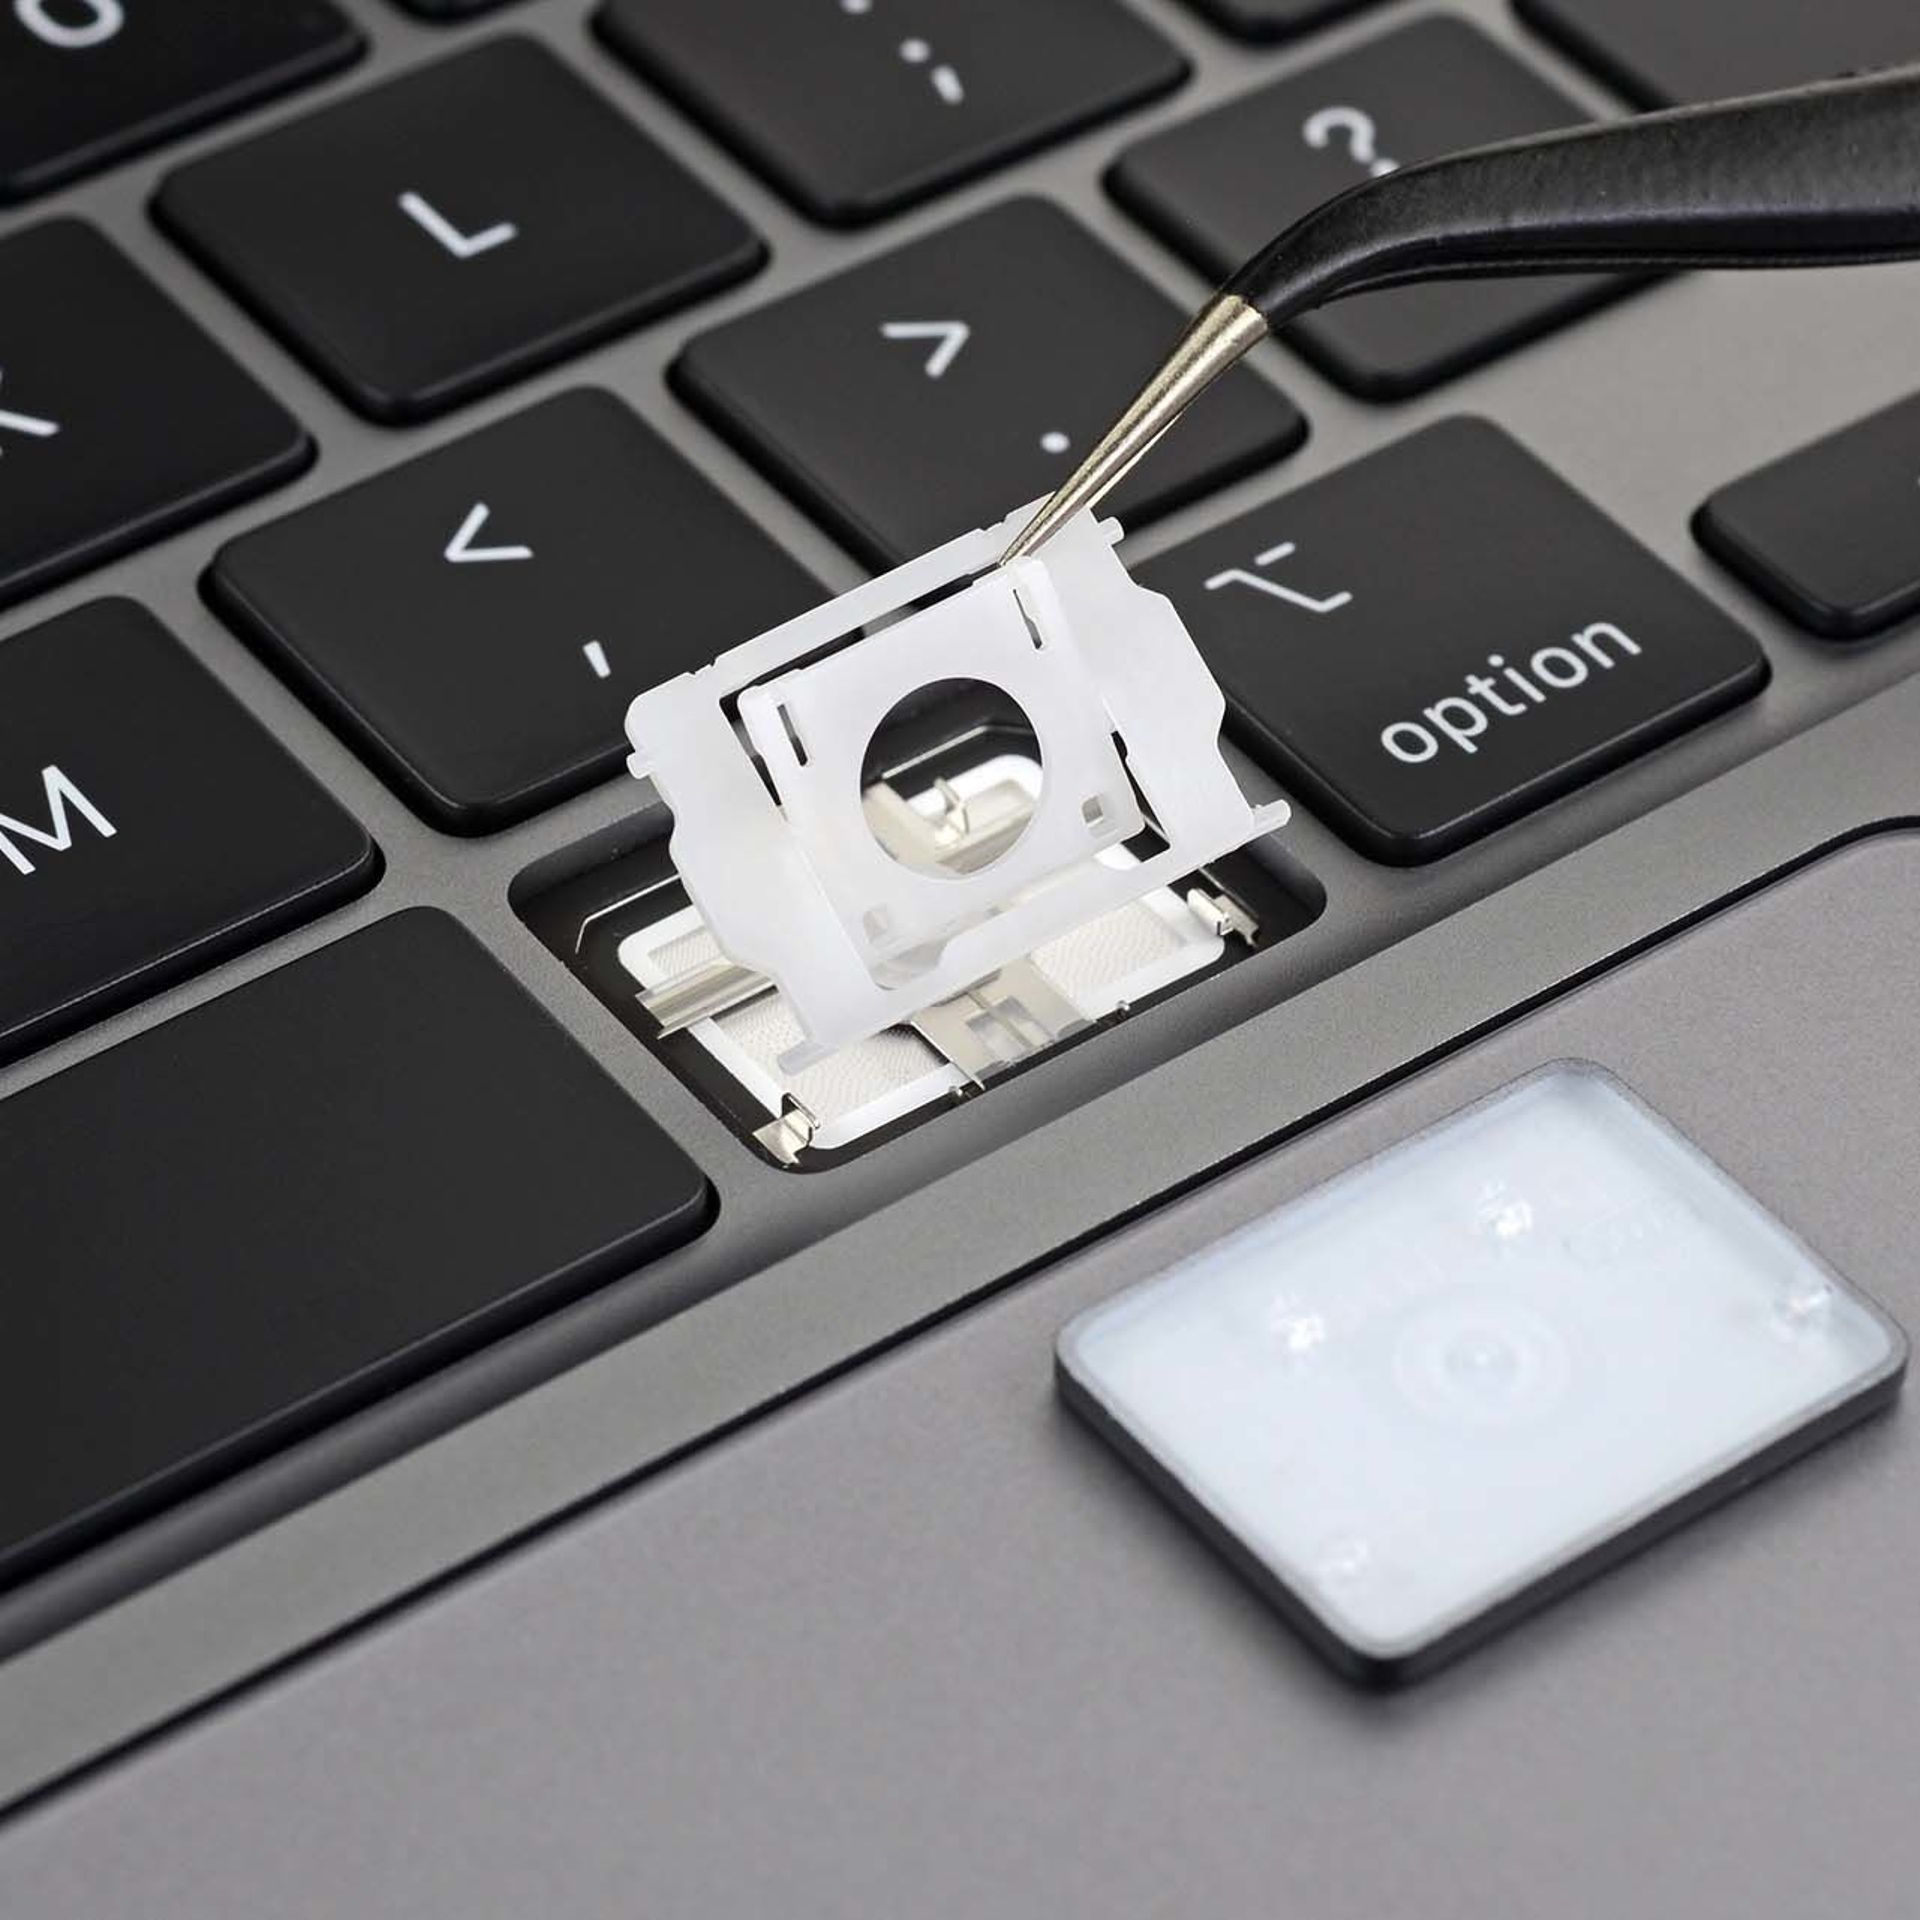 Le 'nouveau' clavier du MacBook Pro 16 pouces n'est pas si 'nouveau' que ça  